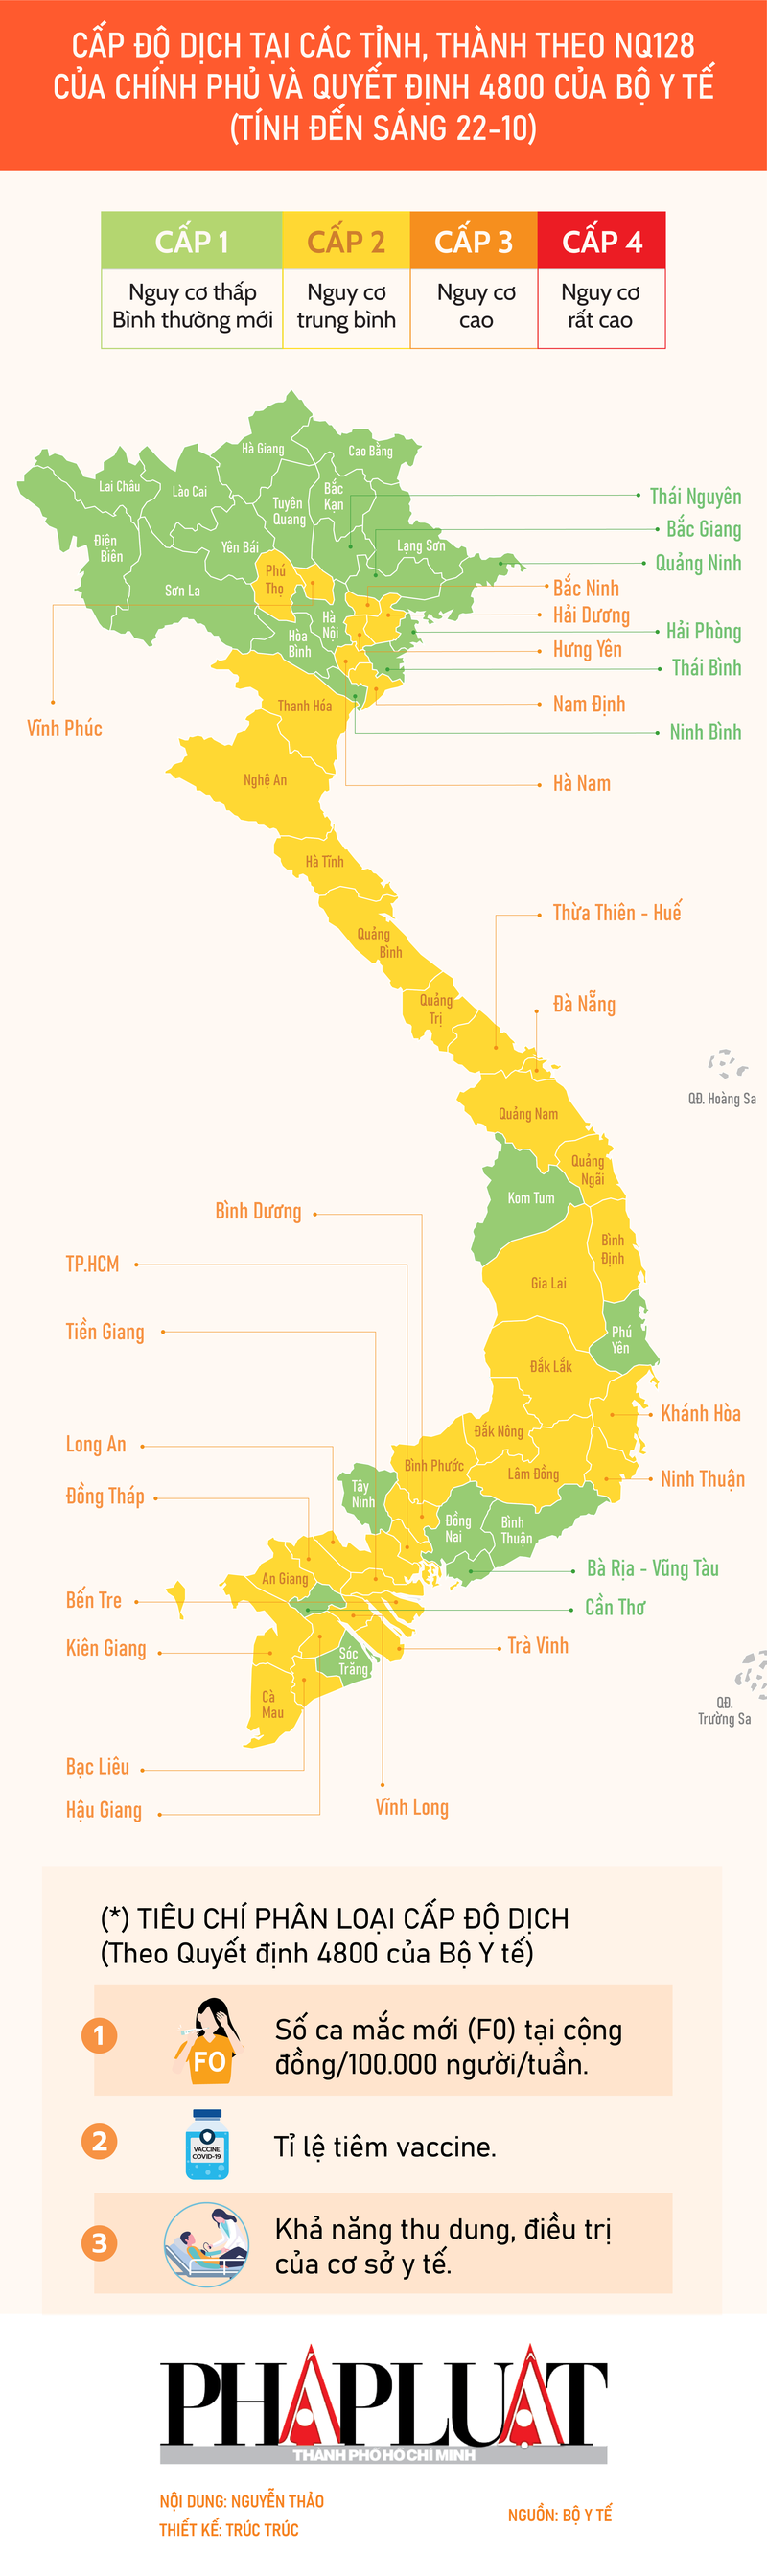 Infographic: Bộ Y tế công bố cấp độ dịch tại 63 tỉnh, thành phố - ảnh 1